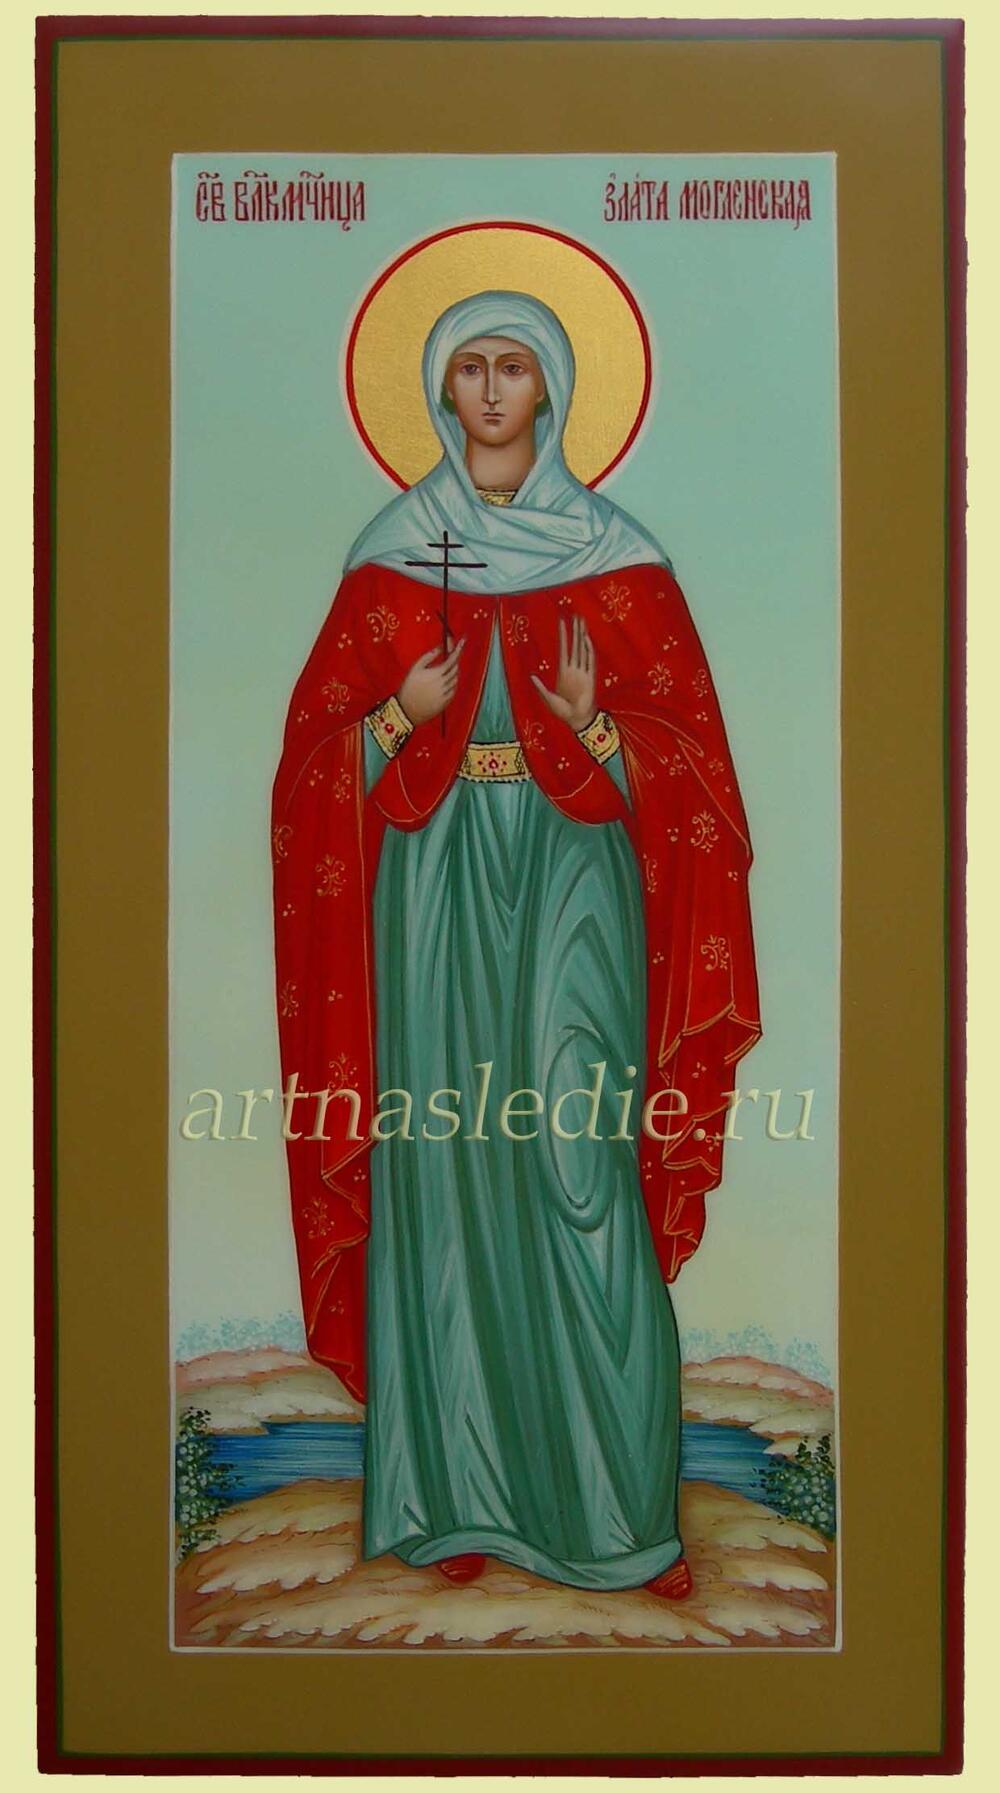 Икона Злата Могленская святая мученица Арт.0709